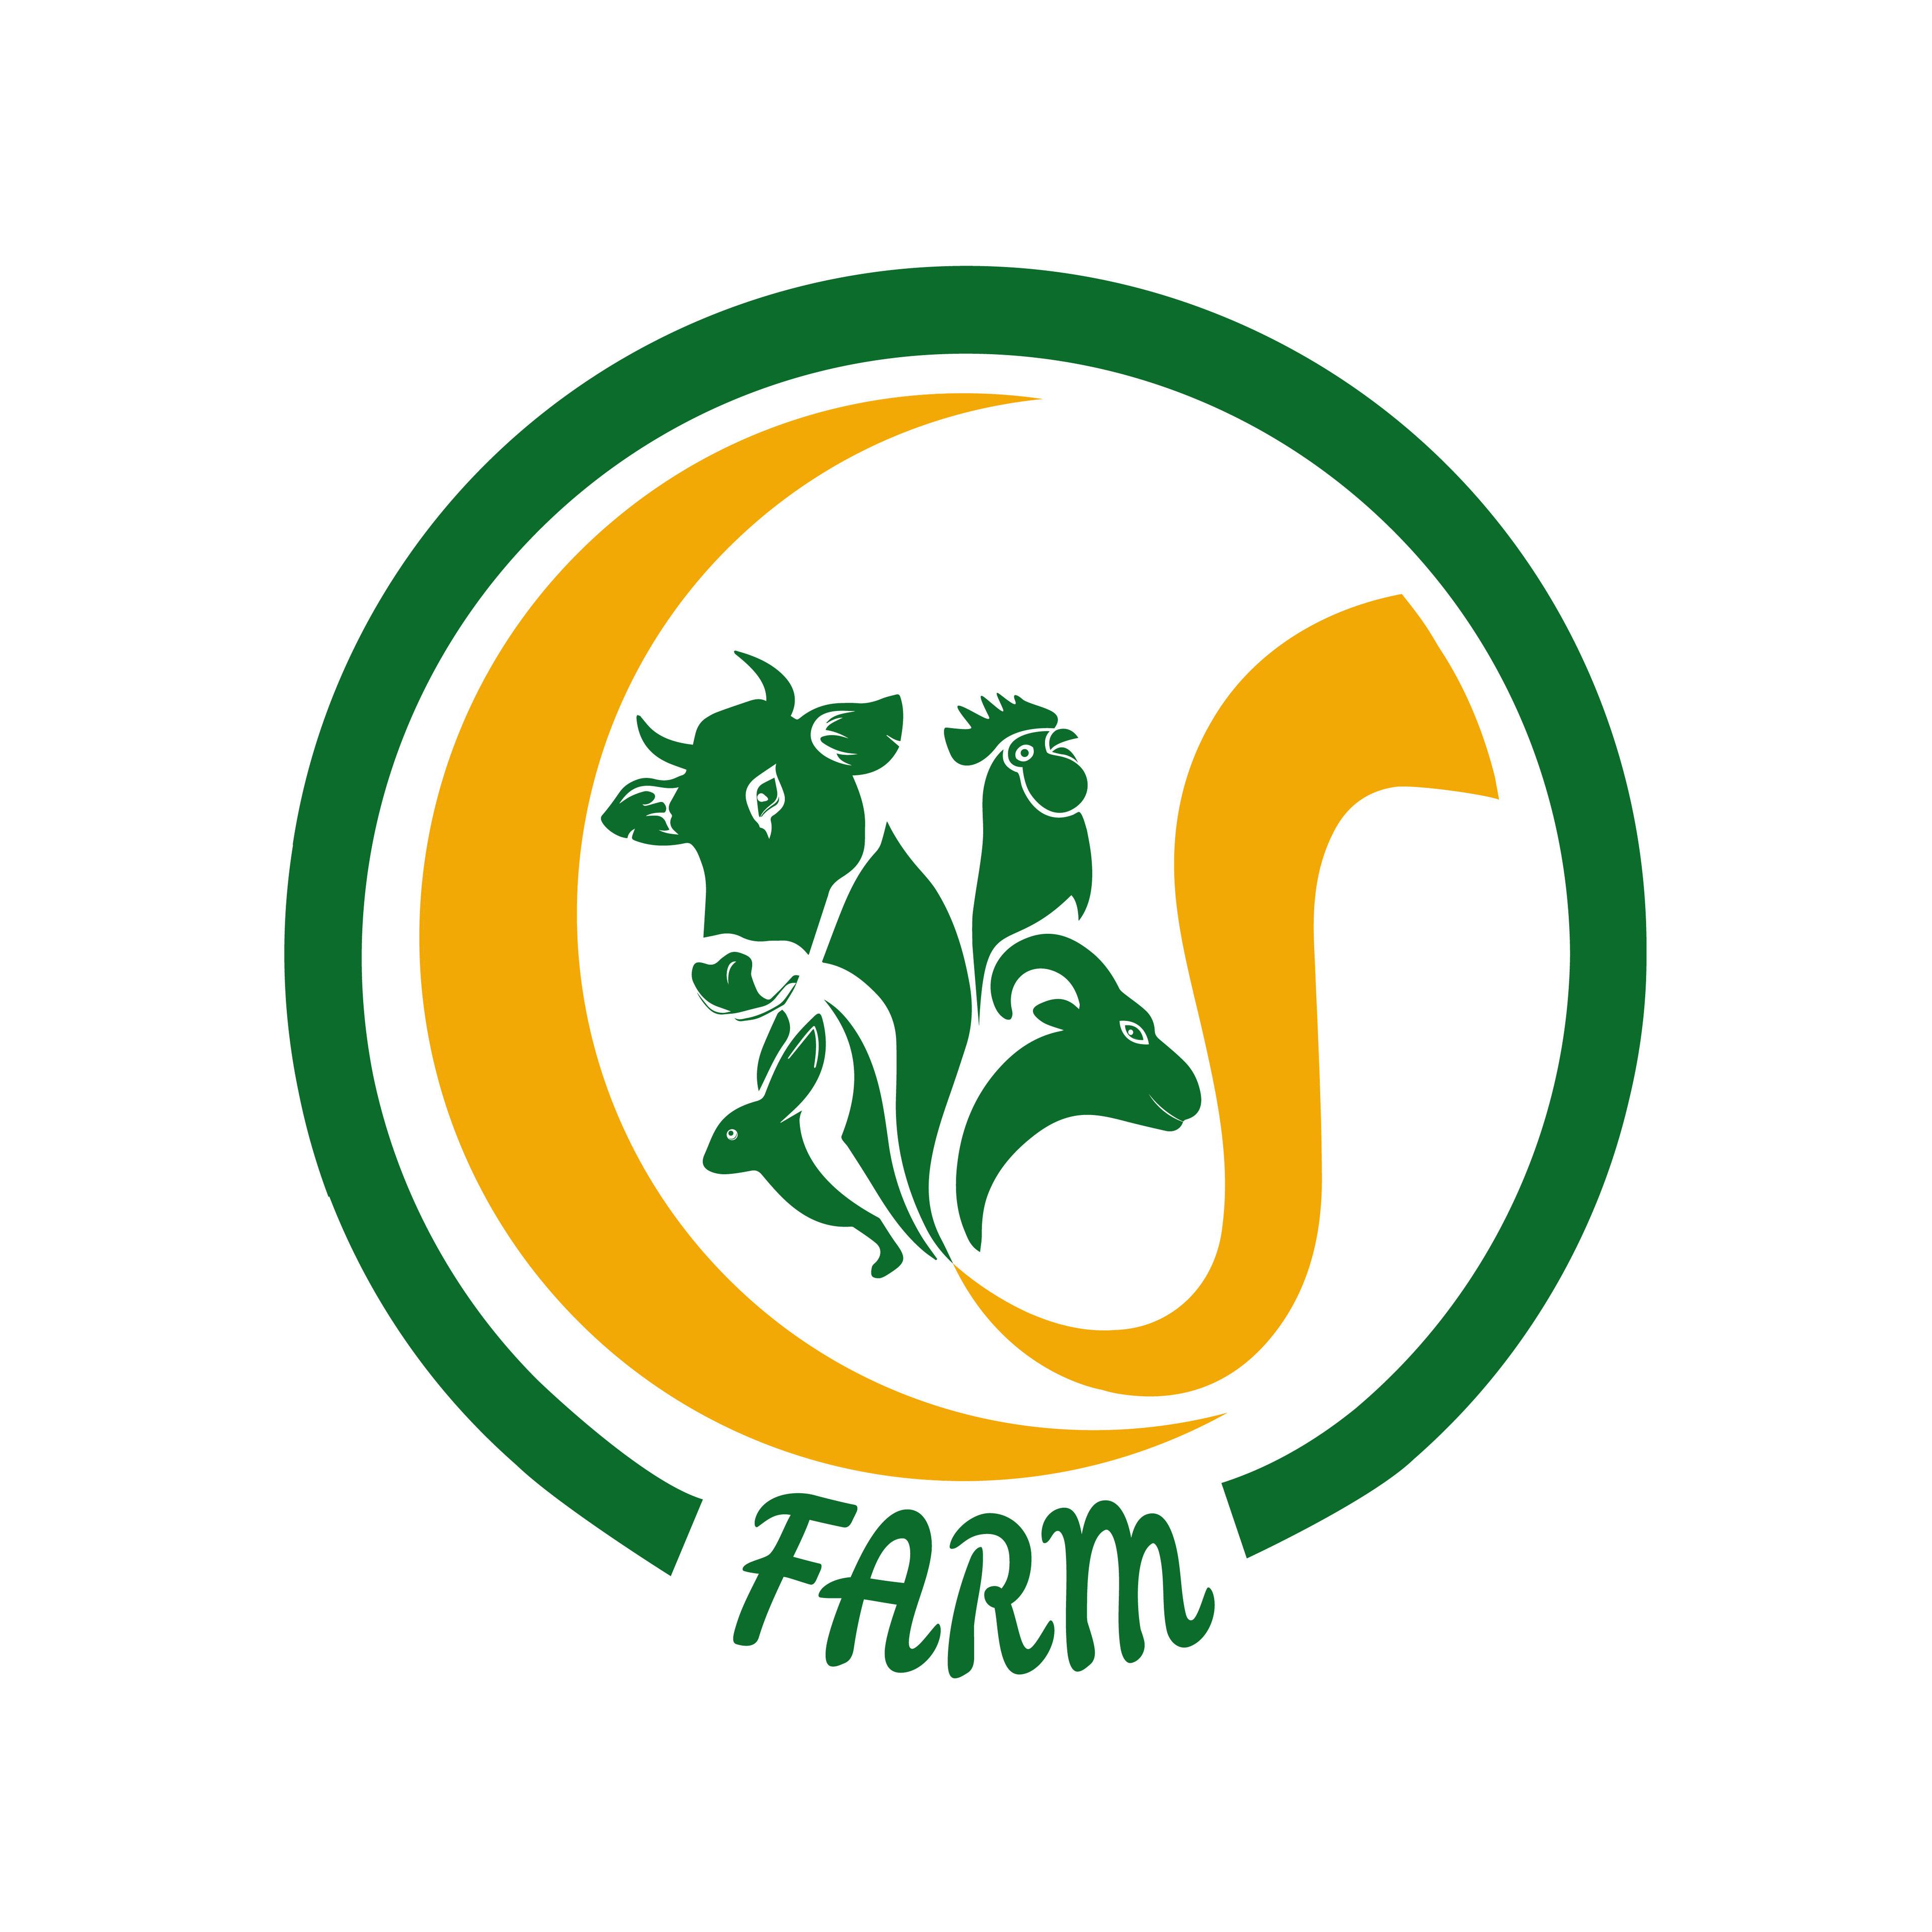 CJ Farms & Agritech